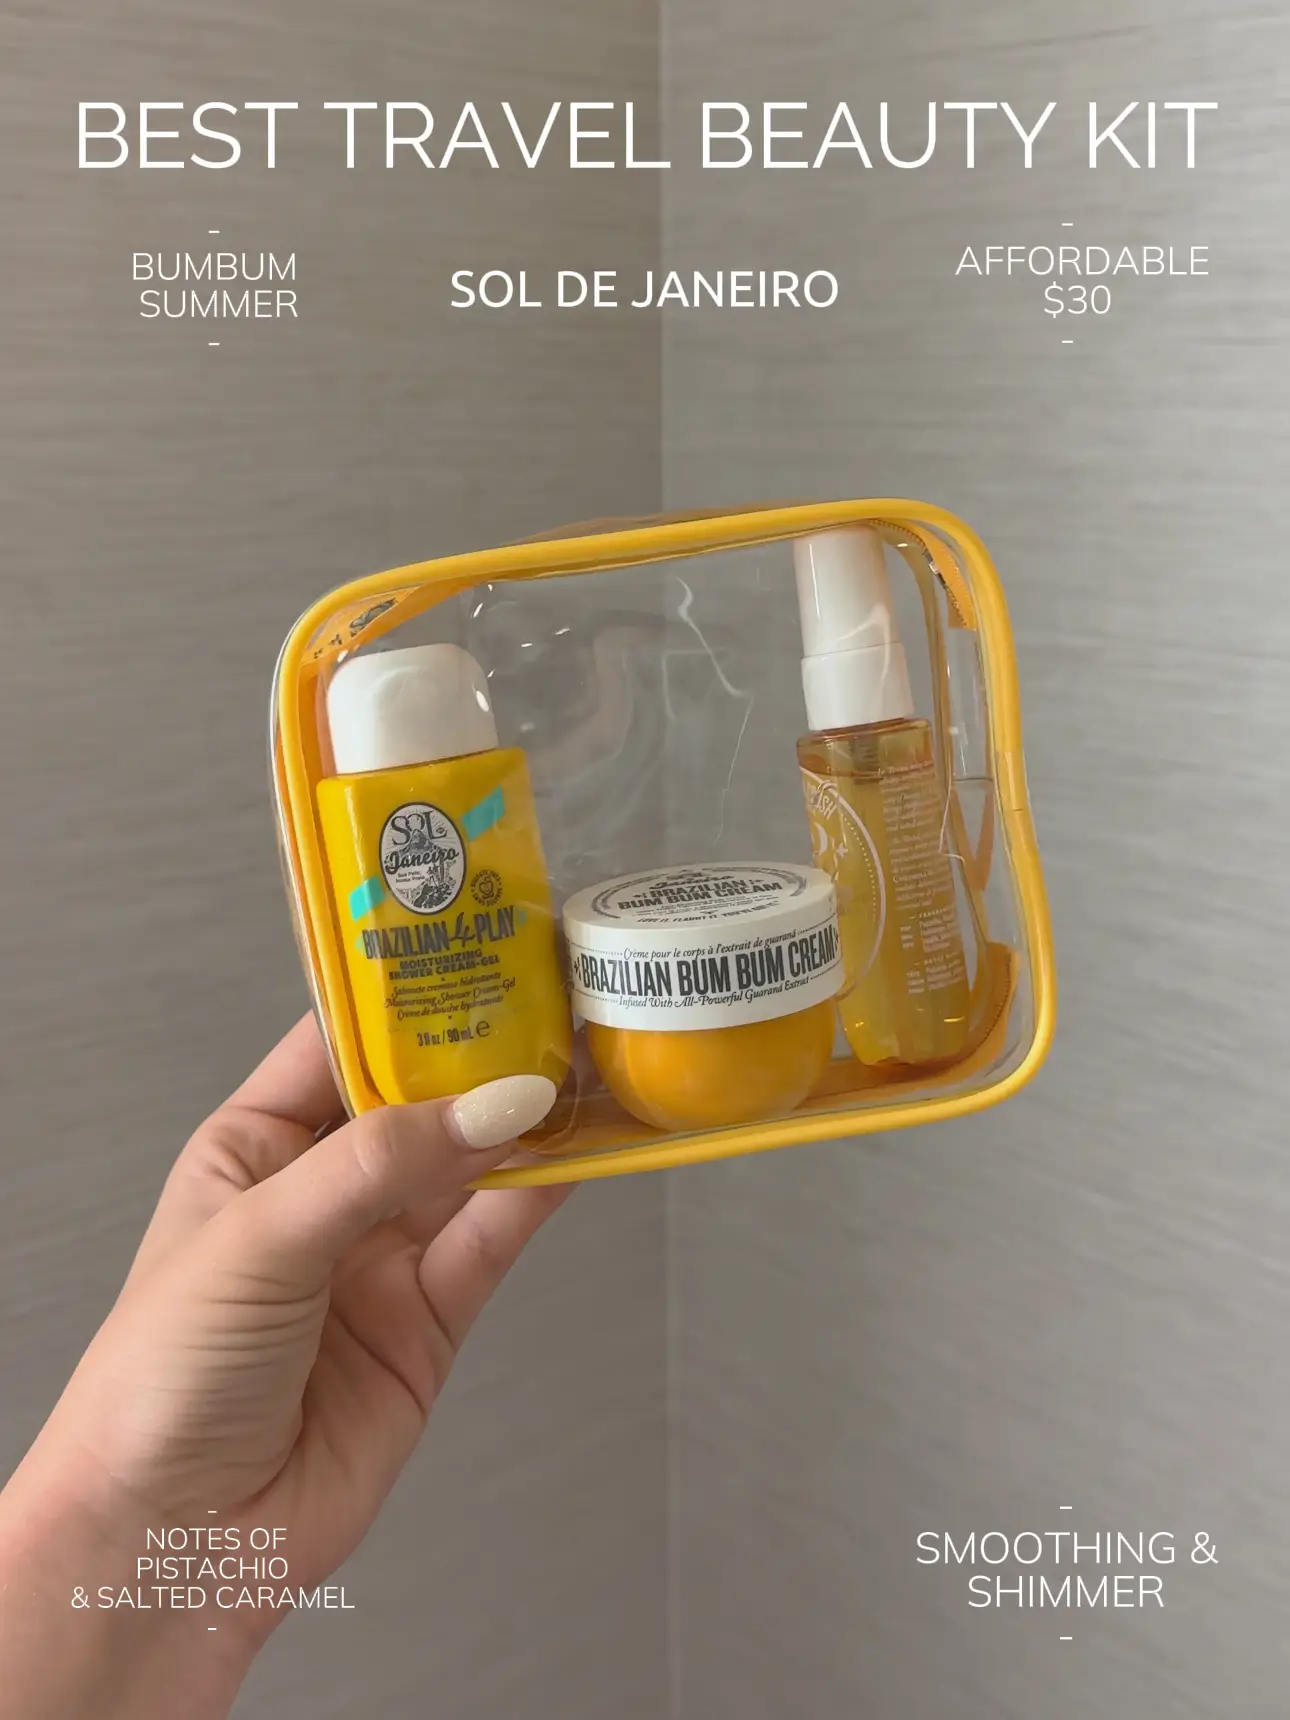 Sol de Janeiro Jet Set Brazilian Bum Bum Cream + Shower Gel & Body Mist Kit